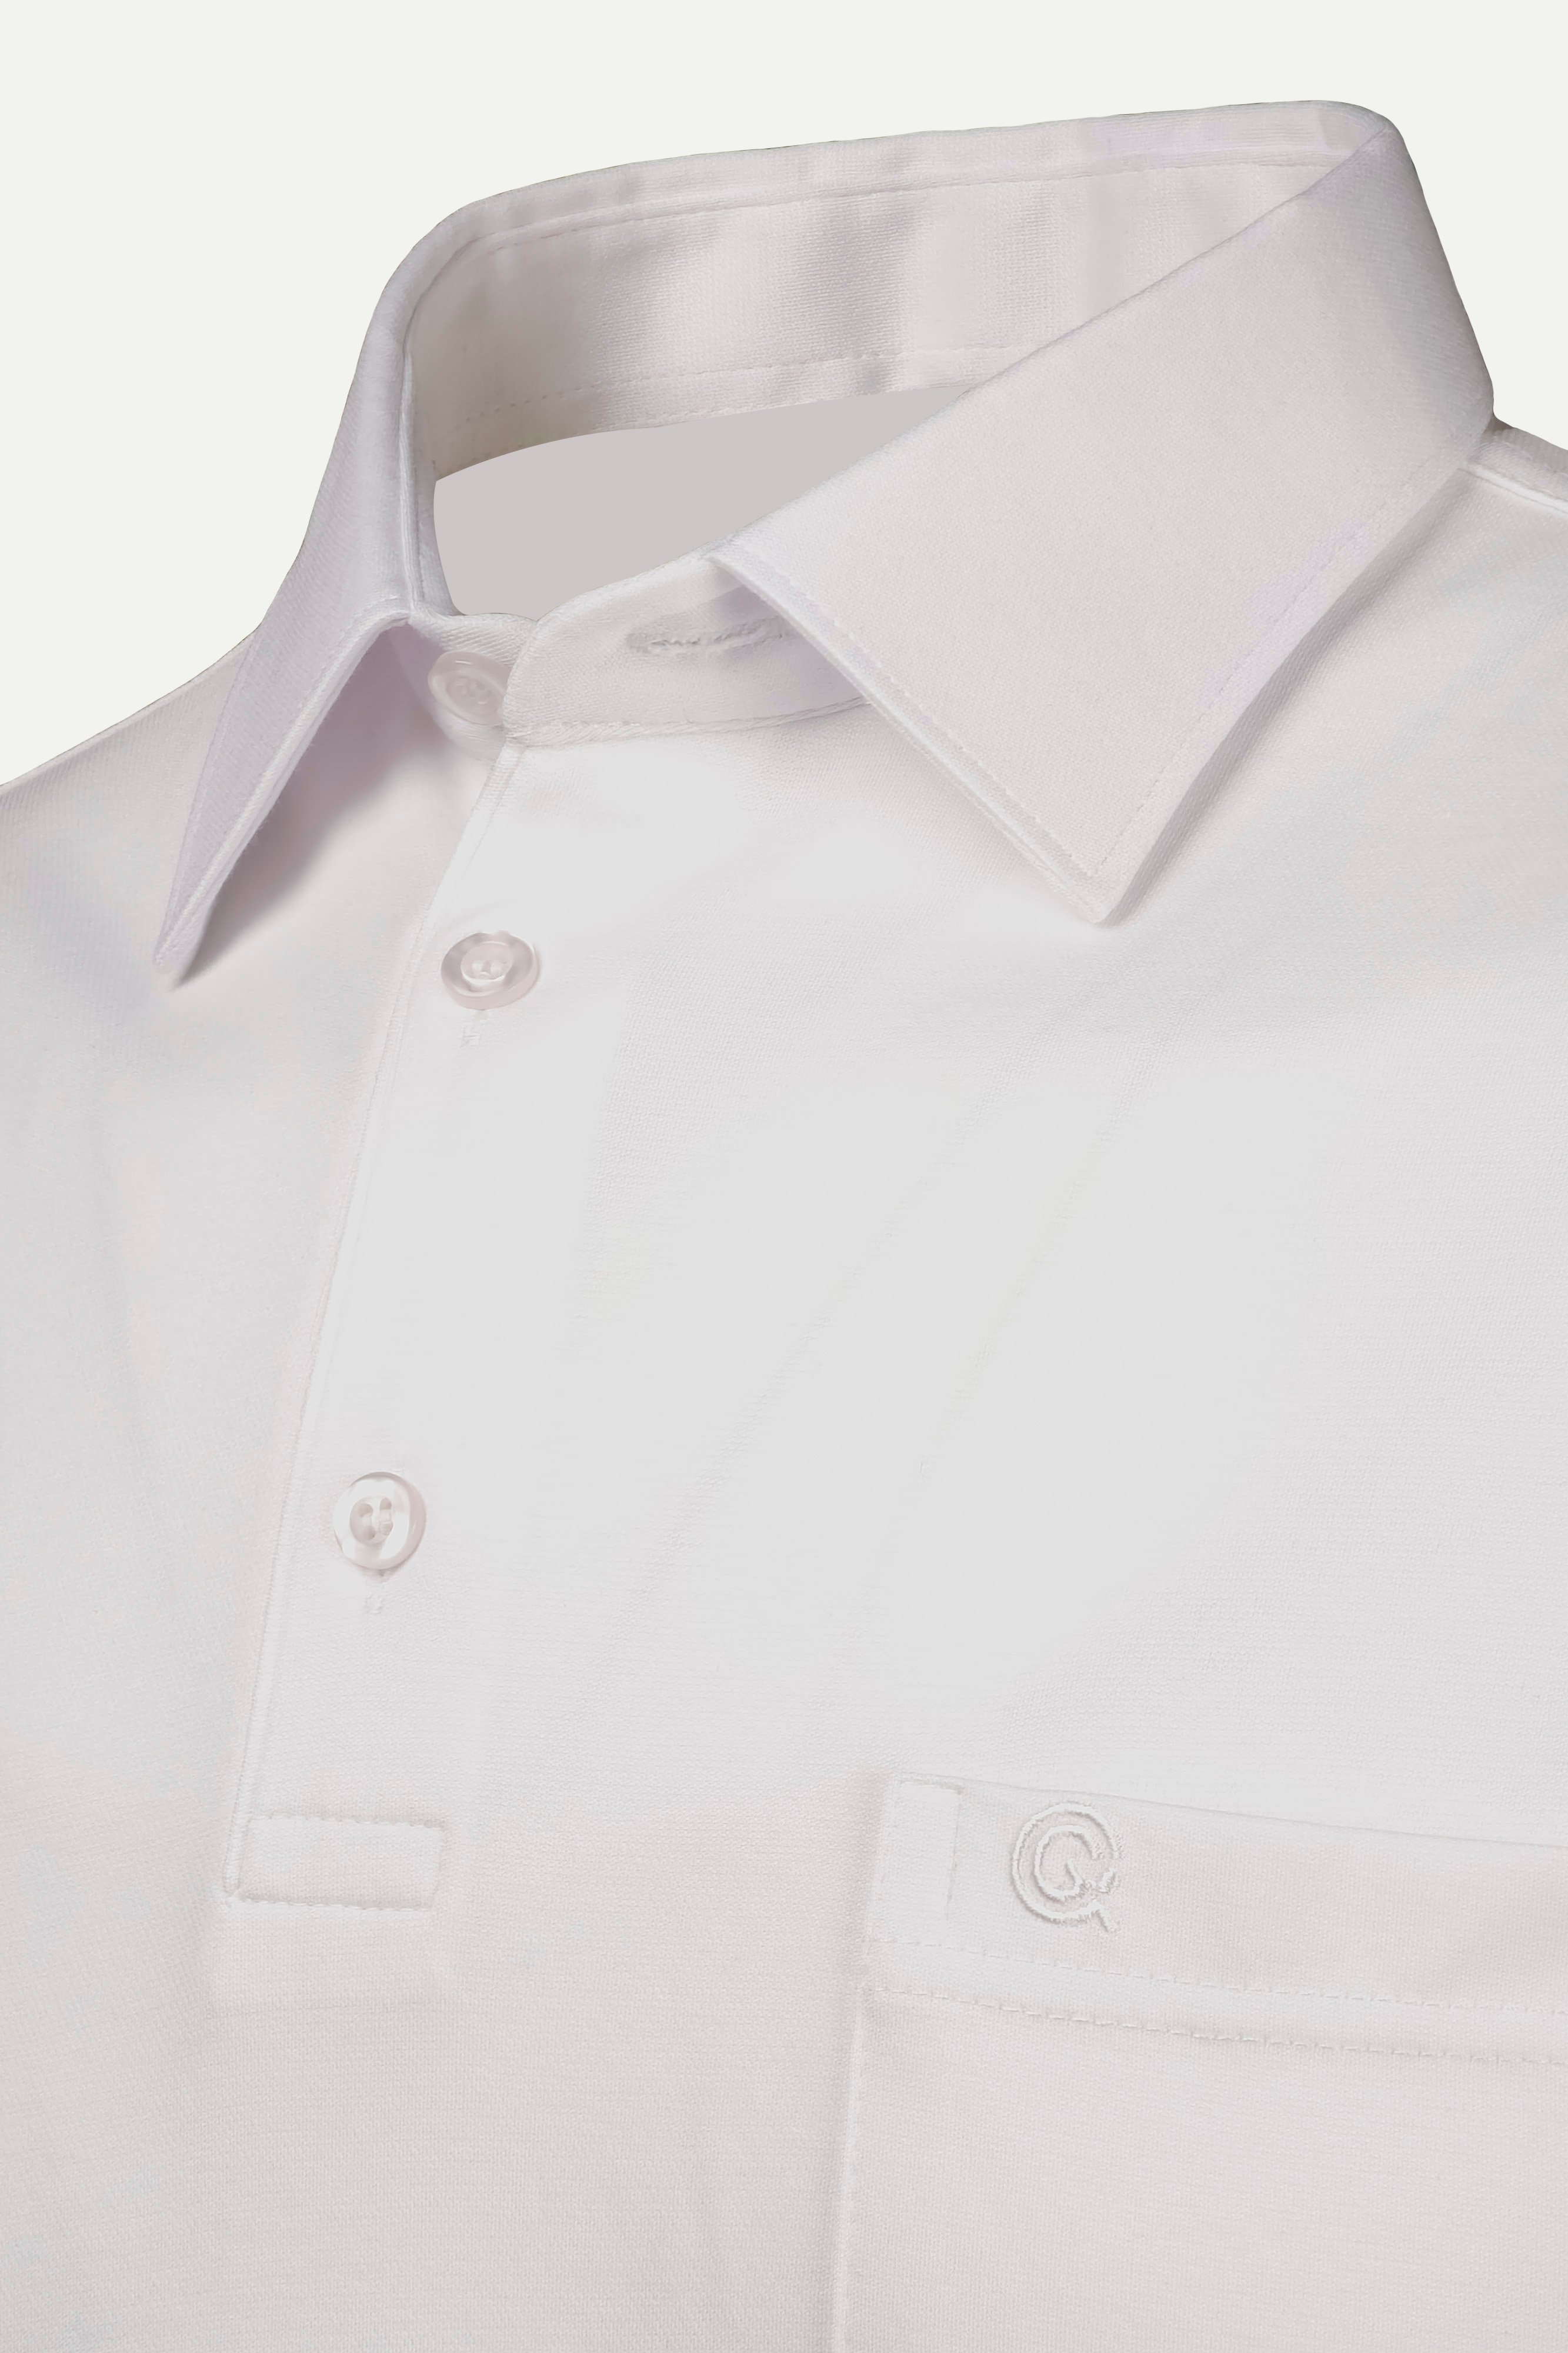 Çizgi Triko Erkek Gömlek Yaka Düğmeli Cepli Tişört Klasik Kalıp - BEYAZ